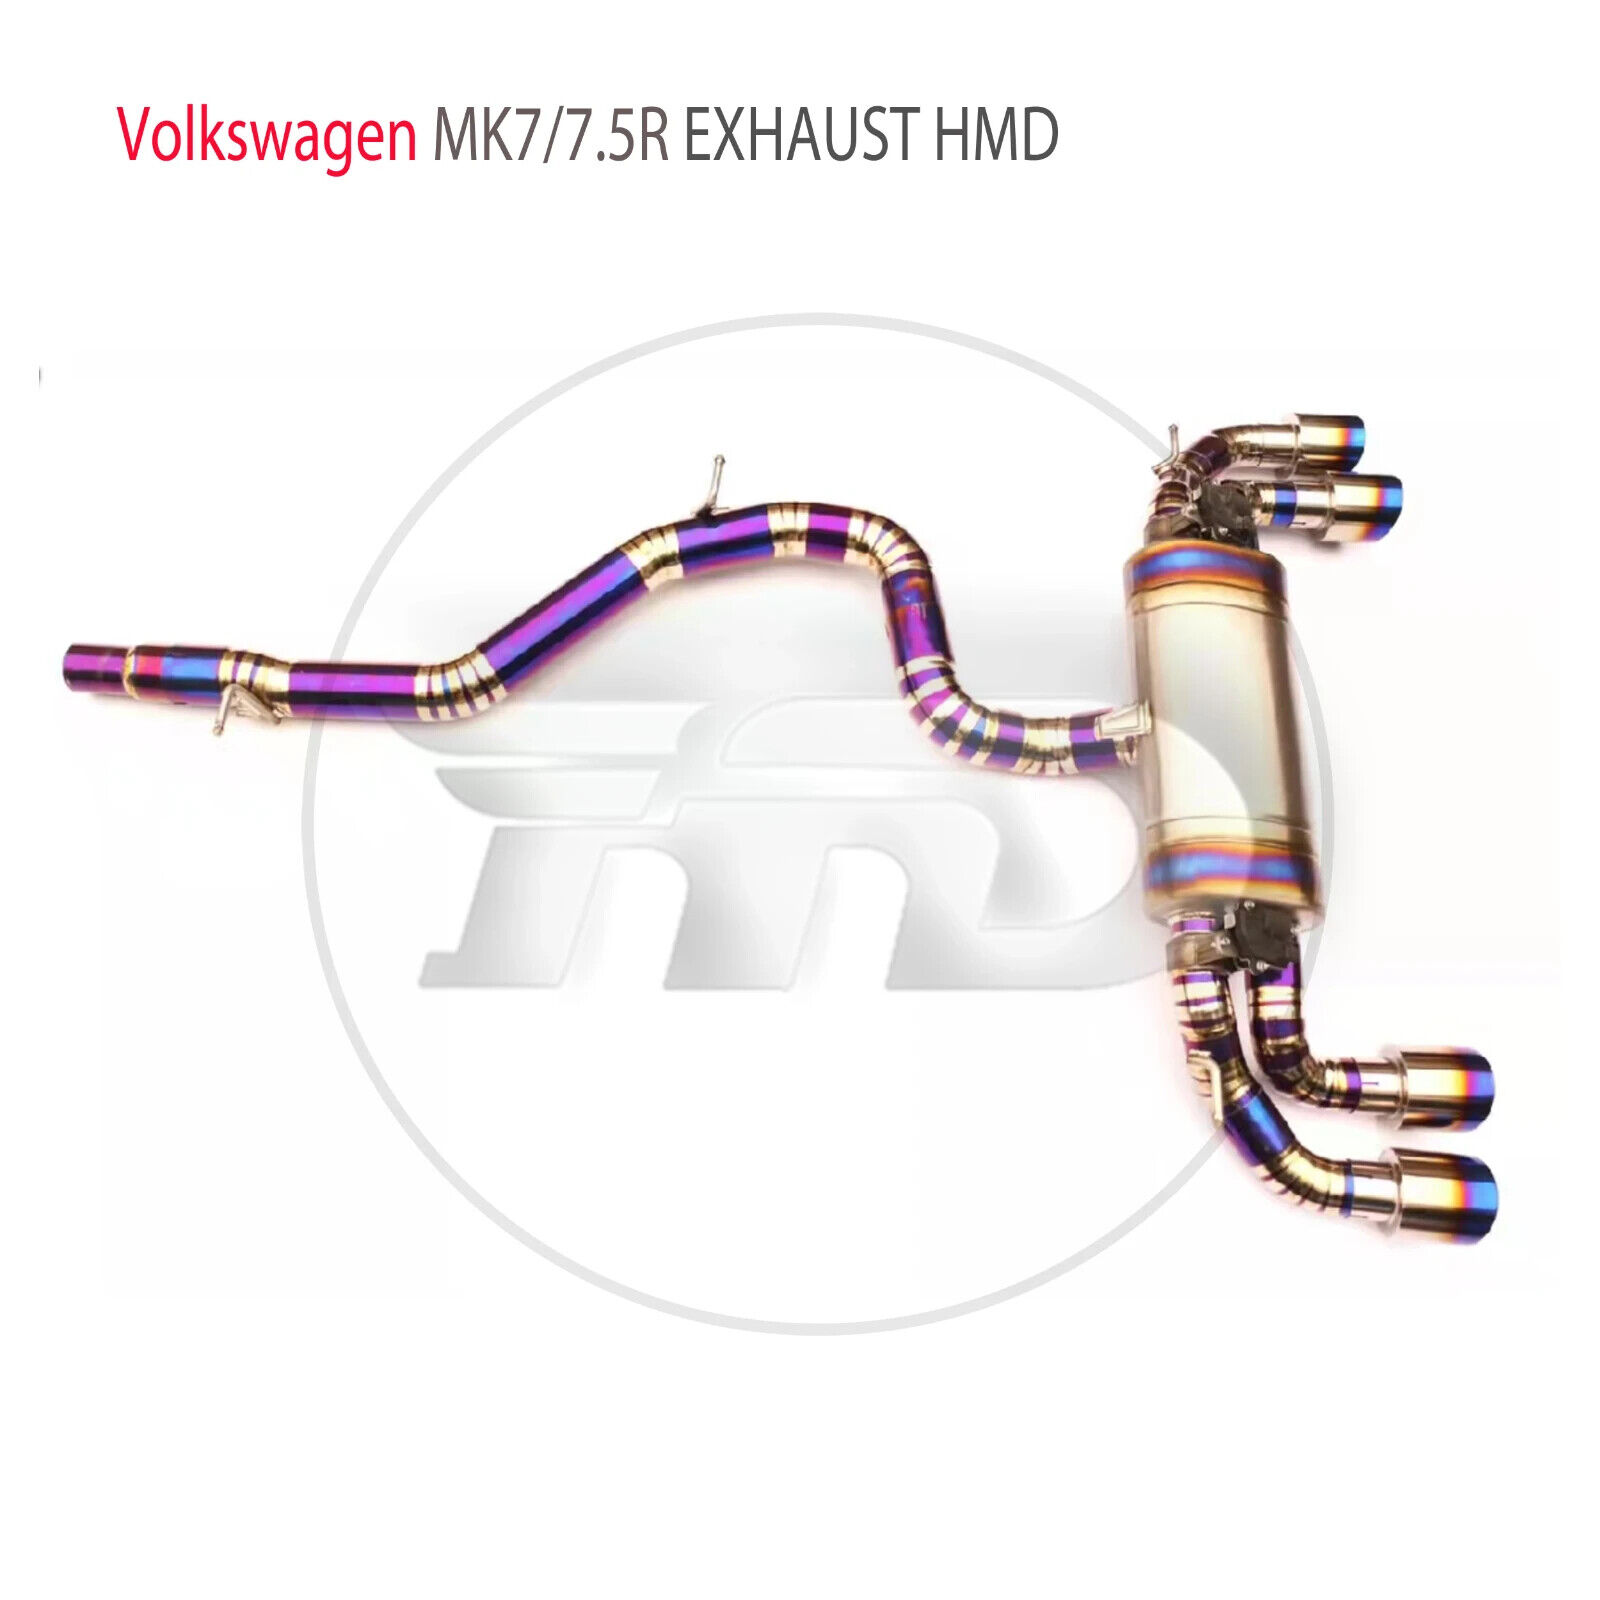 HMD Exhaust Pipe for Volkswagen Golf MK7R MK7.5R